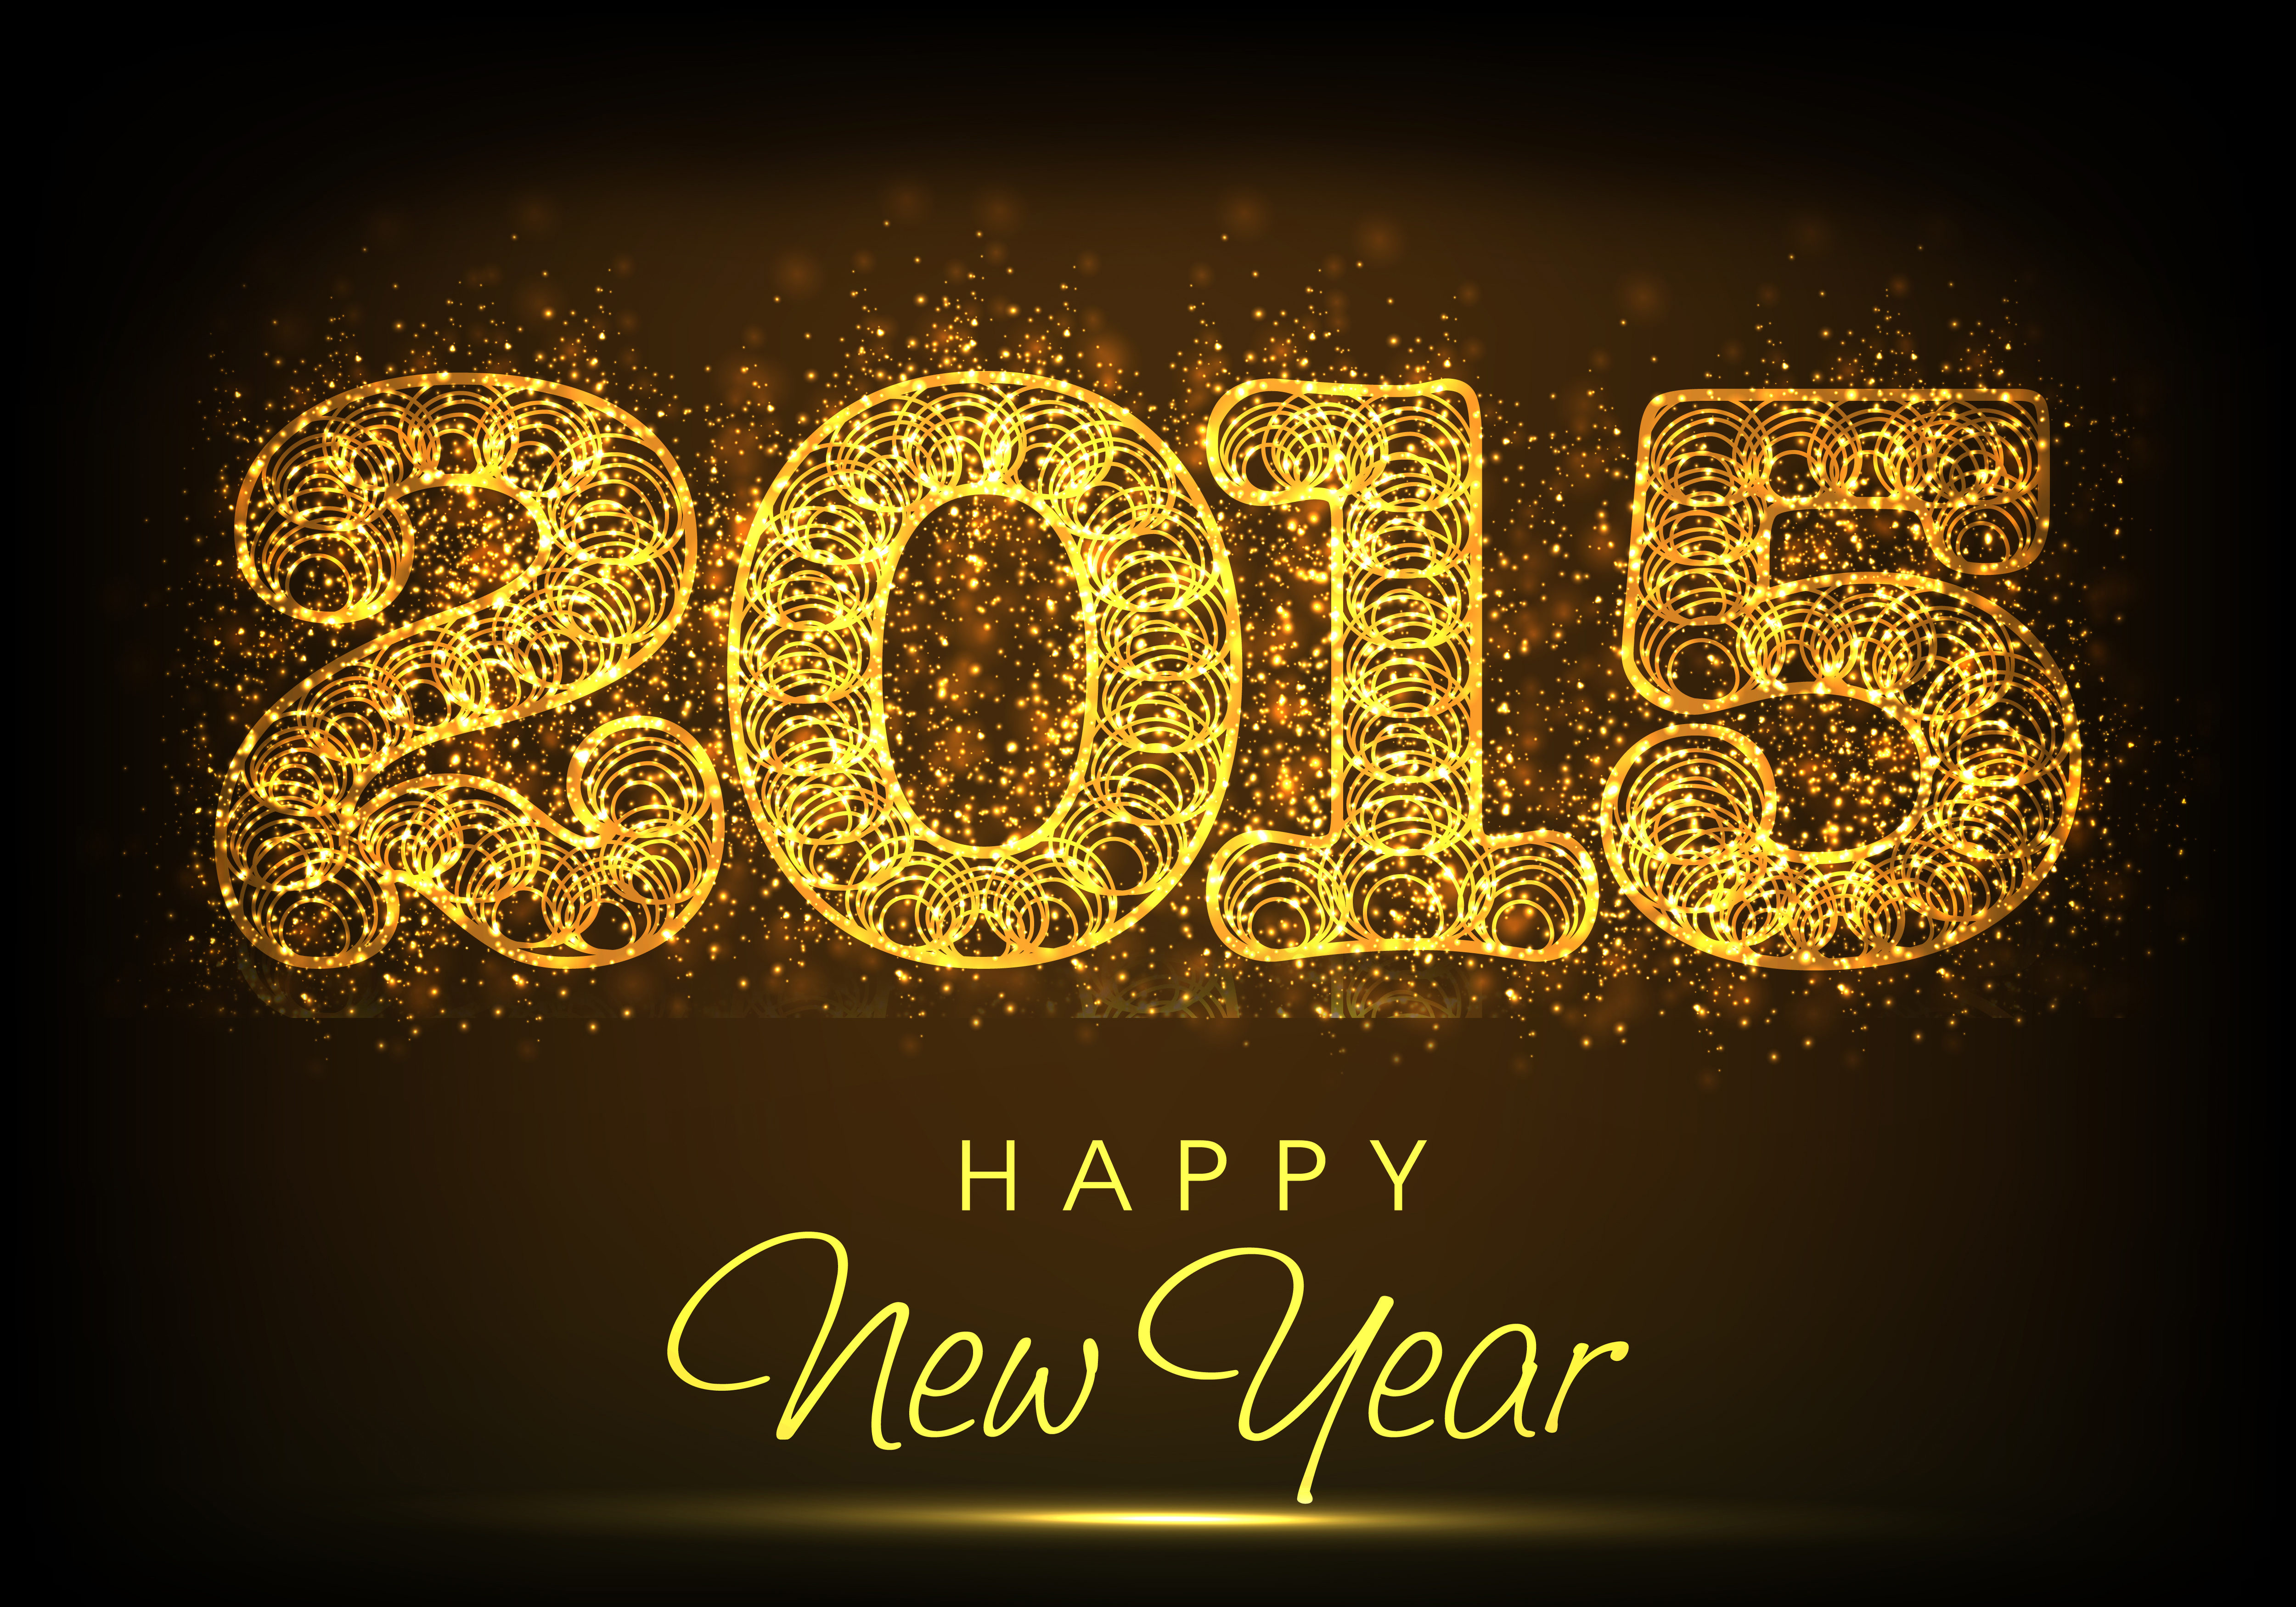 59 2015 год. Новый год 2015. С новым годом 2015. 2015 Год картинки. Картинки новый год 2015.